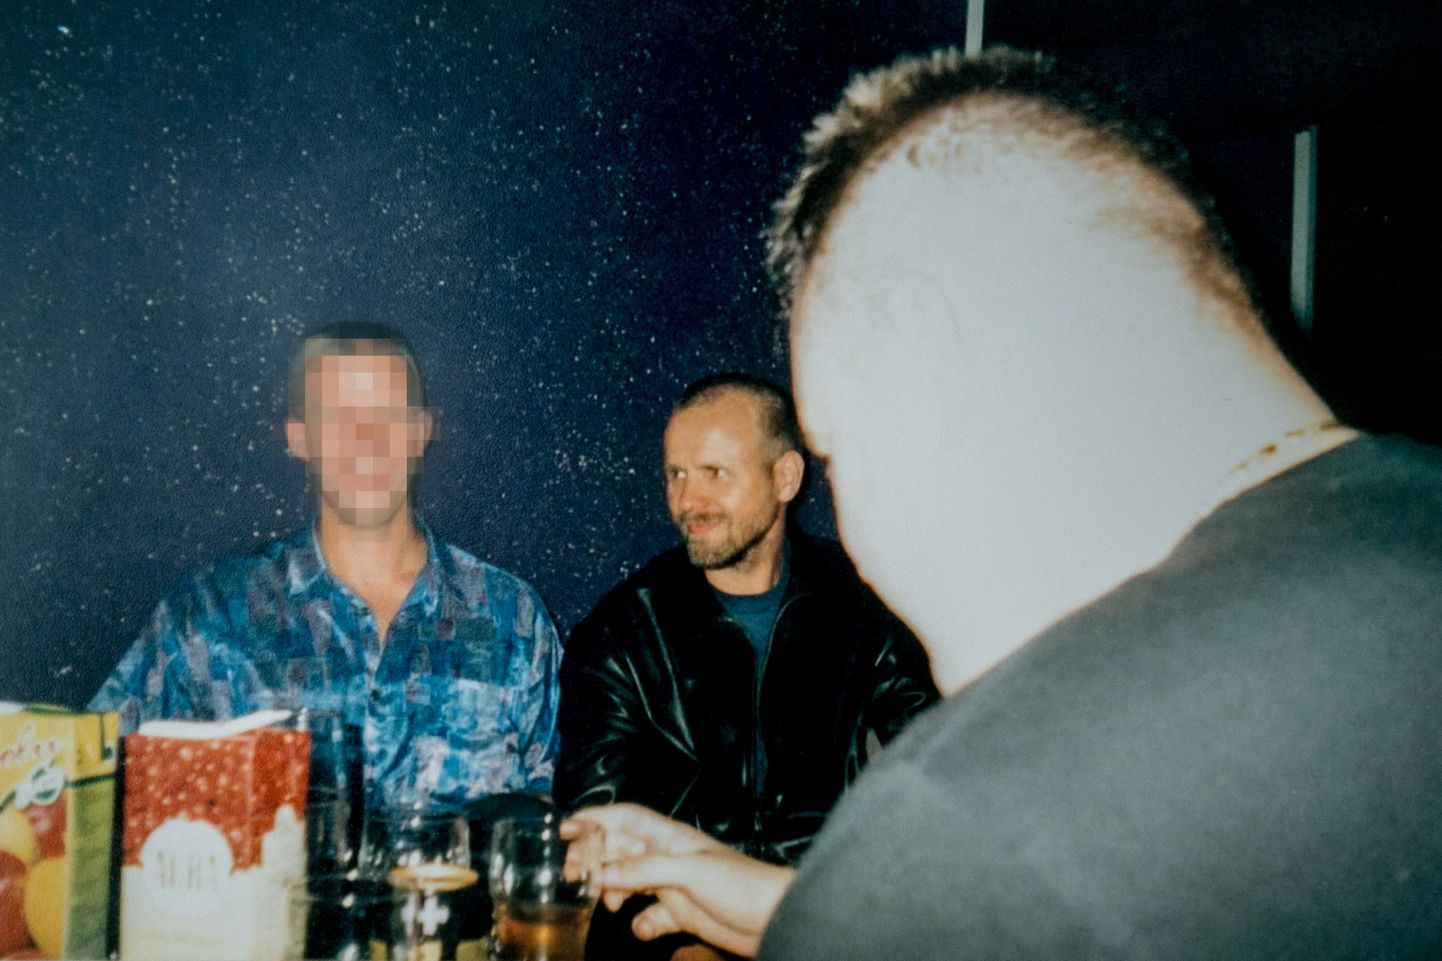 Assar Paulusega (keskel) koos süüdistuse saanud mehe albumist pärinev foto. Vasakul olev isik ei ole süüdistusega seotud.